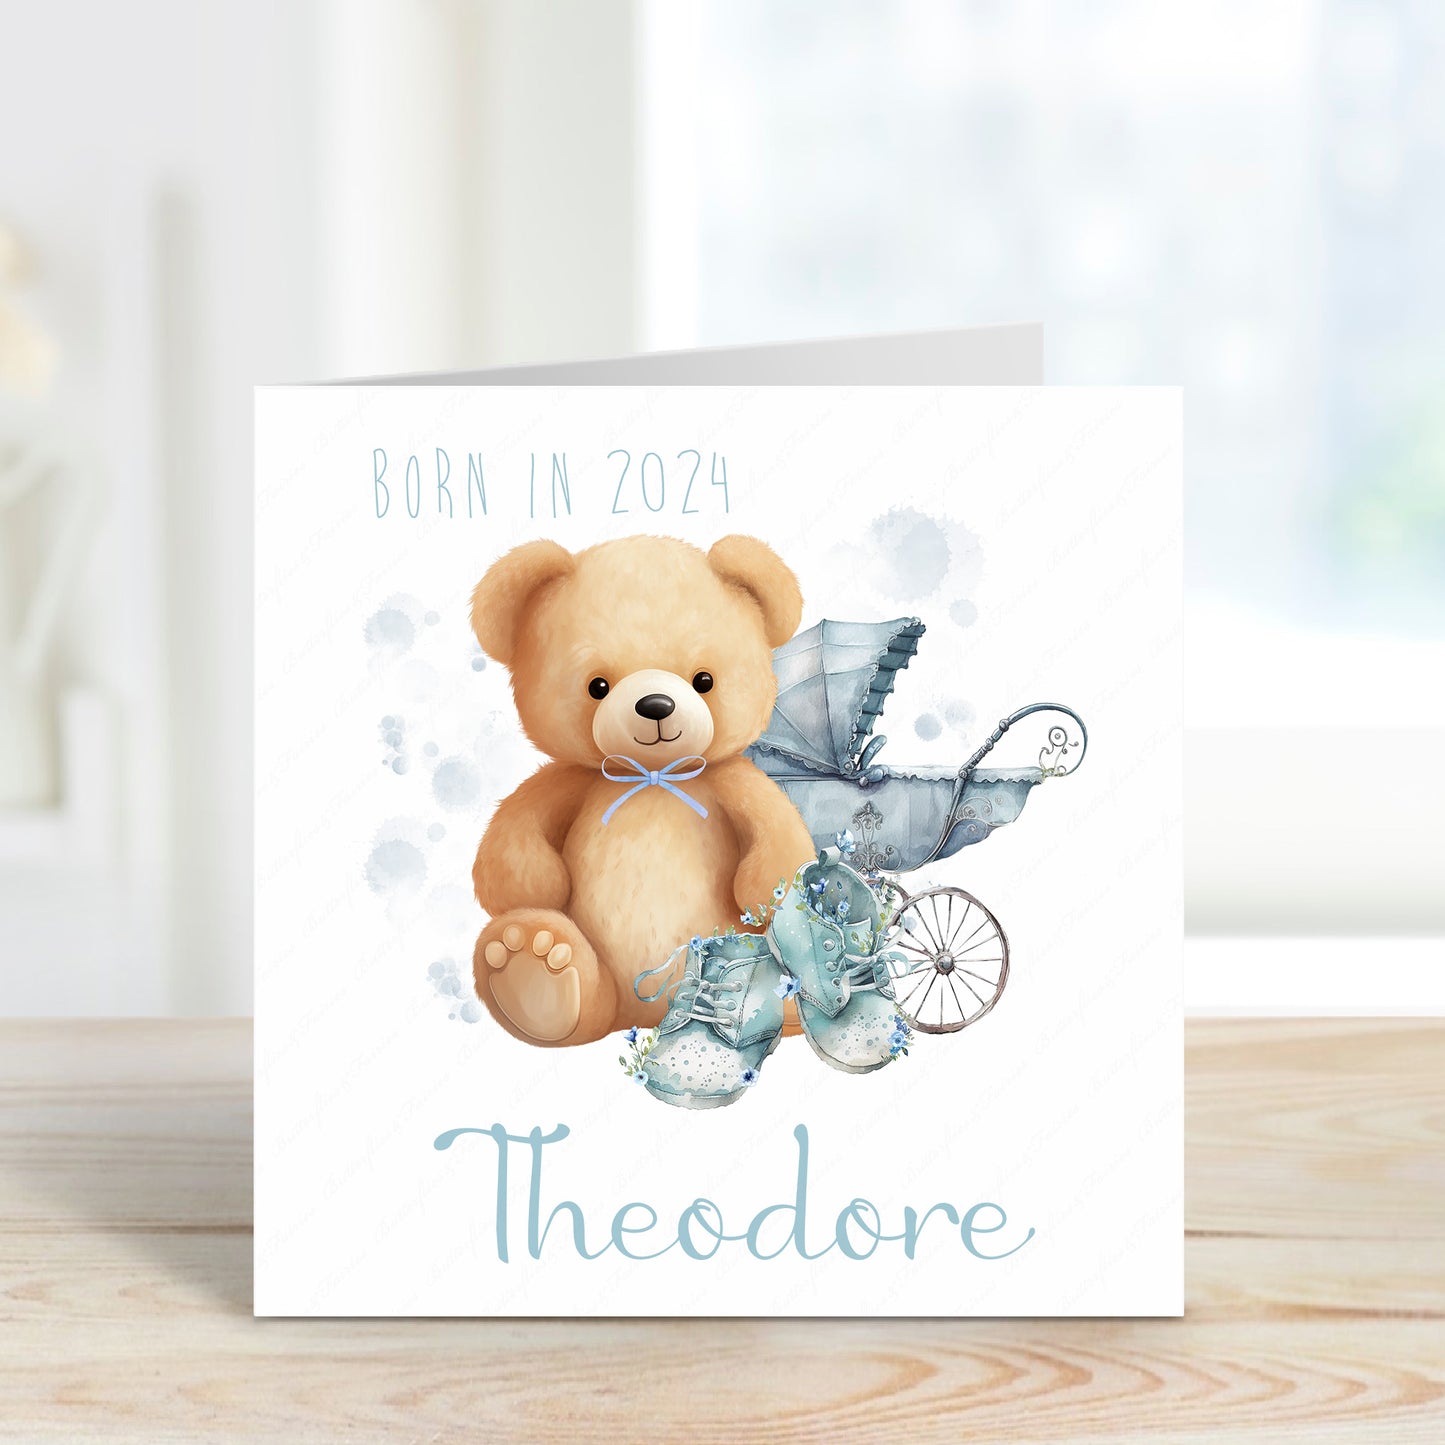 Personalised New Baby Boy Birth Card - Born in 2024 Teddy Bear New Baby Card